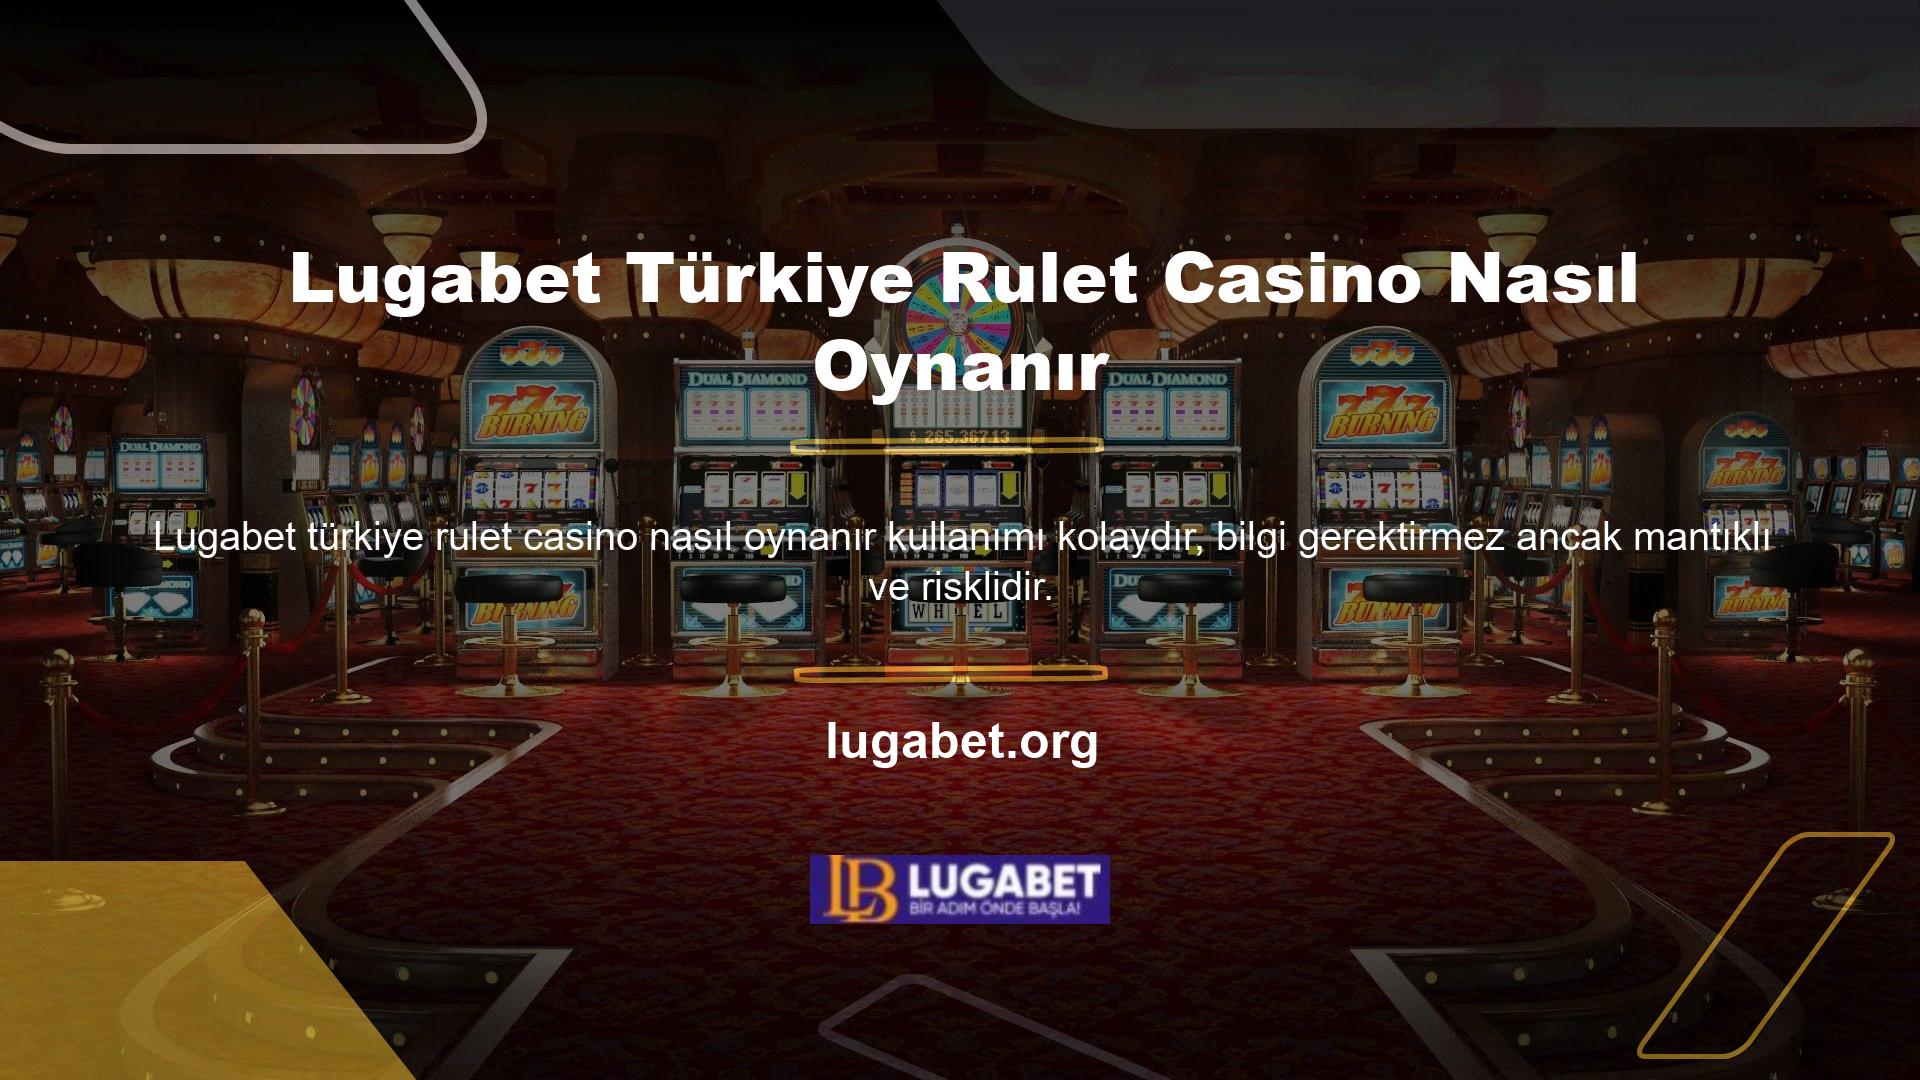 Lugabet Casino Türk Ruleti, tamamen Türkçe olarak geliştirilmiş ve Türk bayiler tarafından sunulan bir oyundur